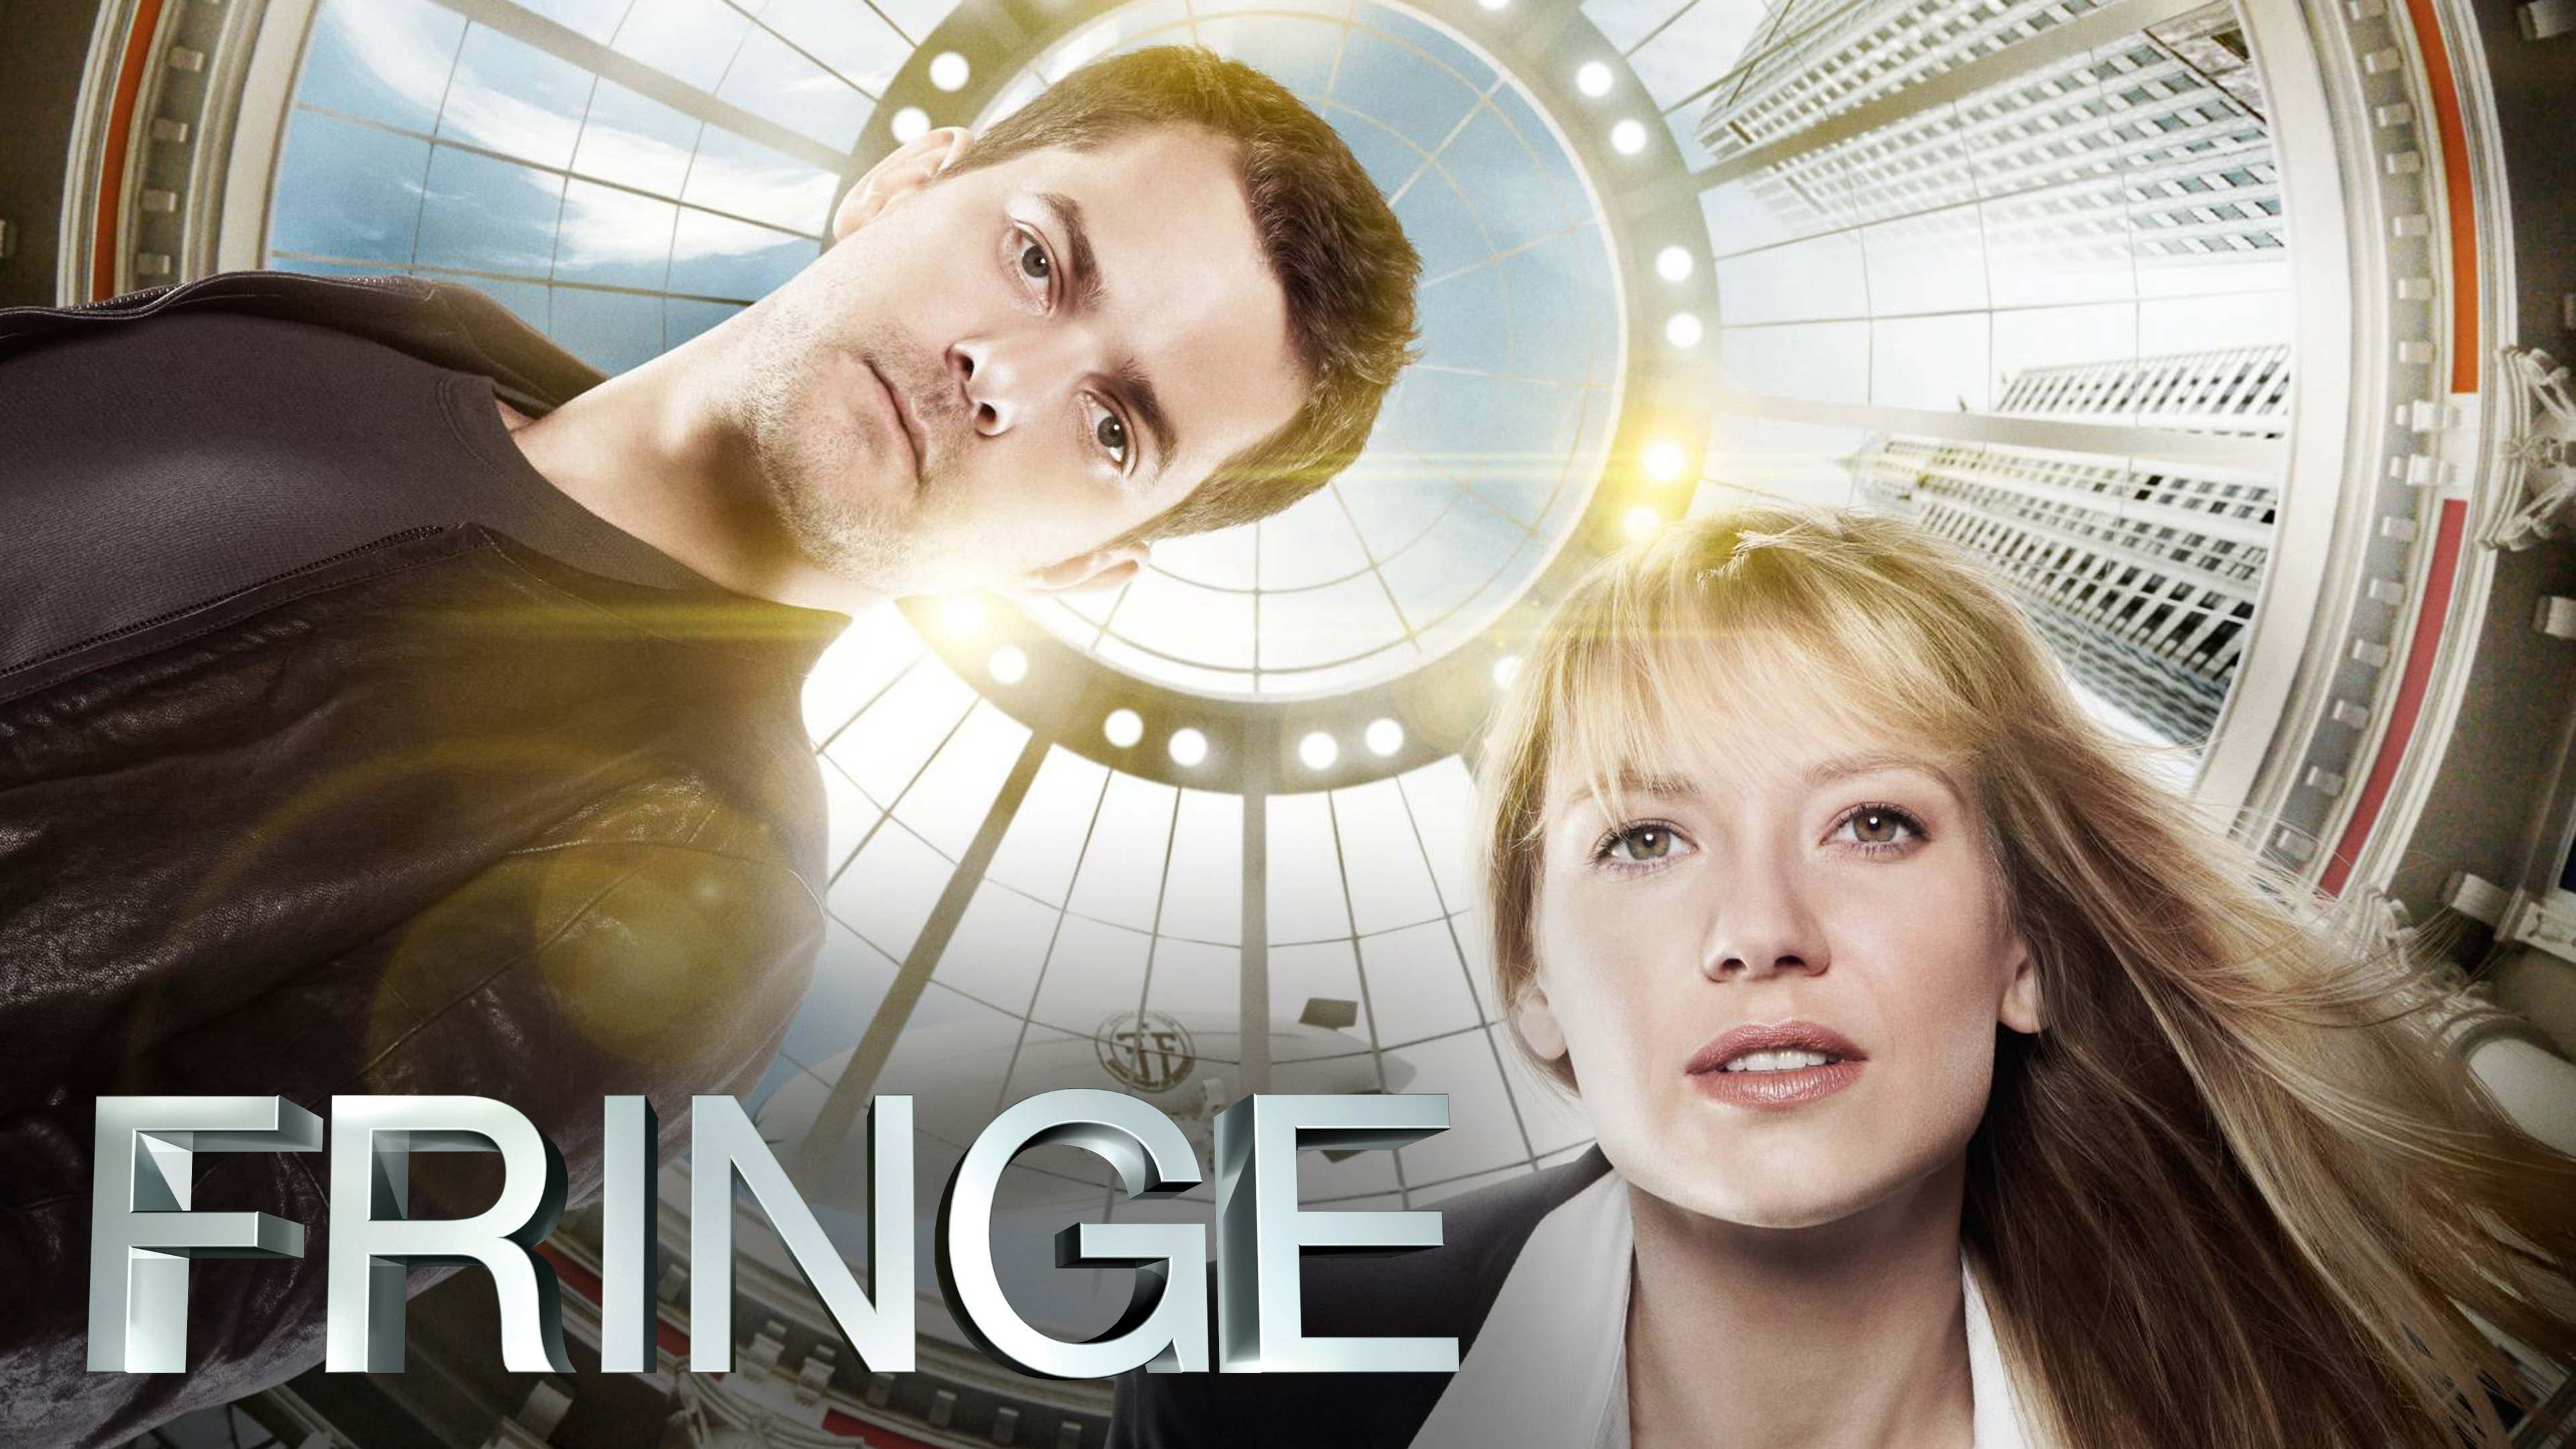 Fringe (Season 3) / Fringe (Season 3) (2010)